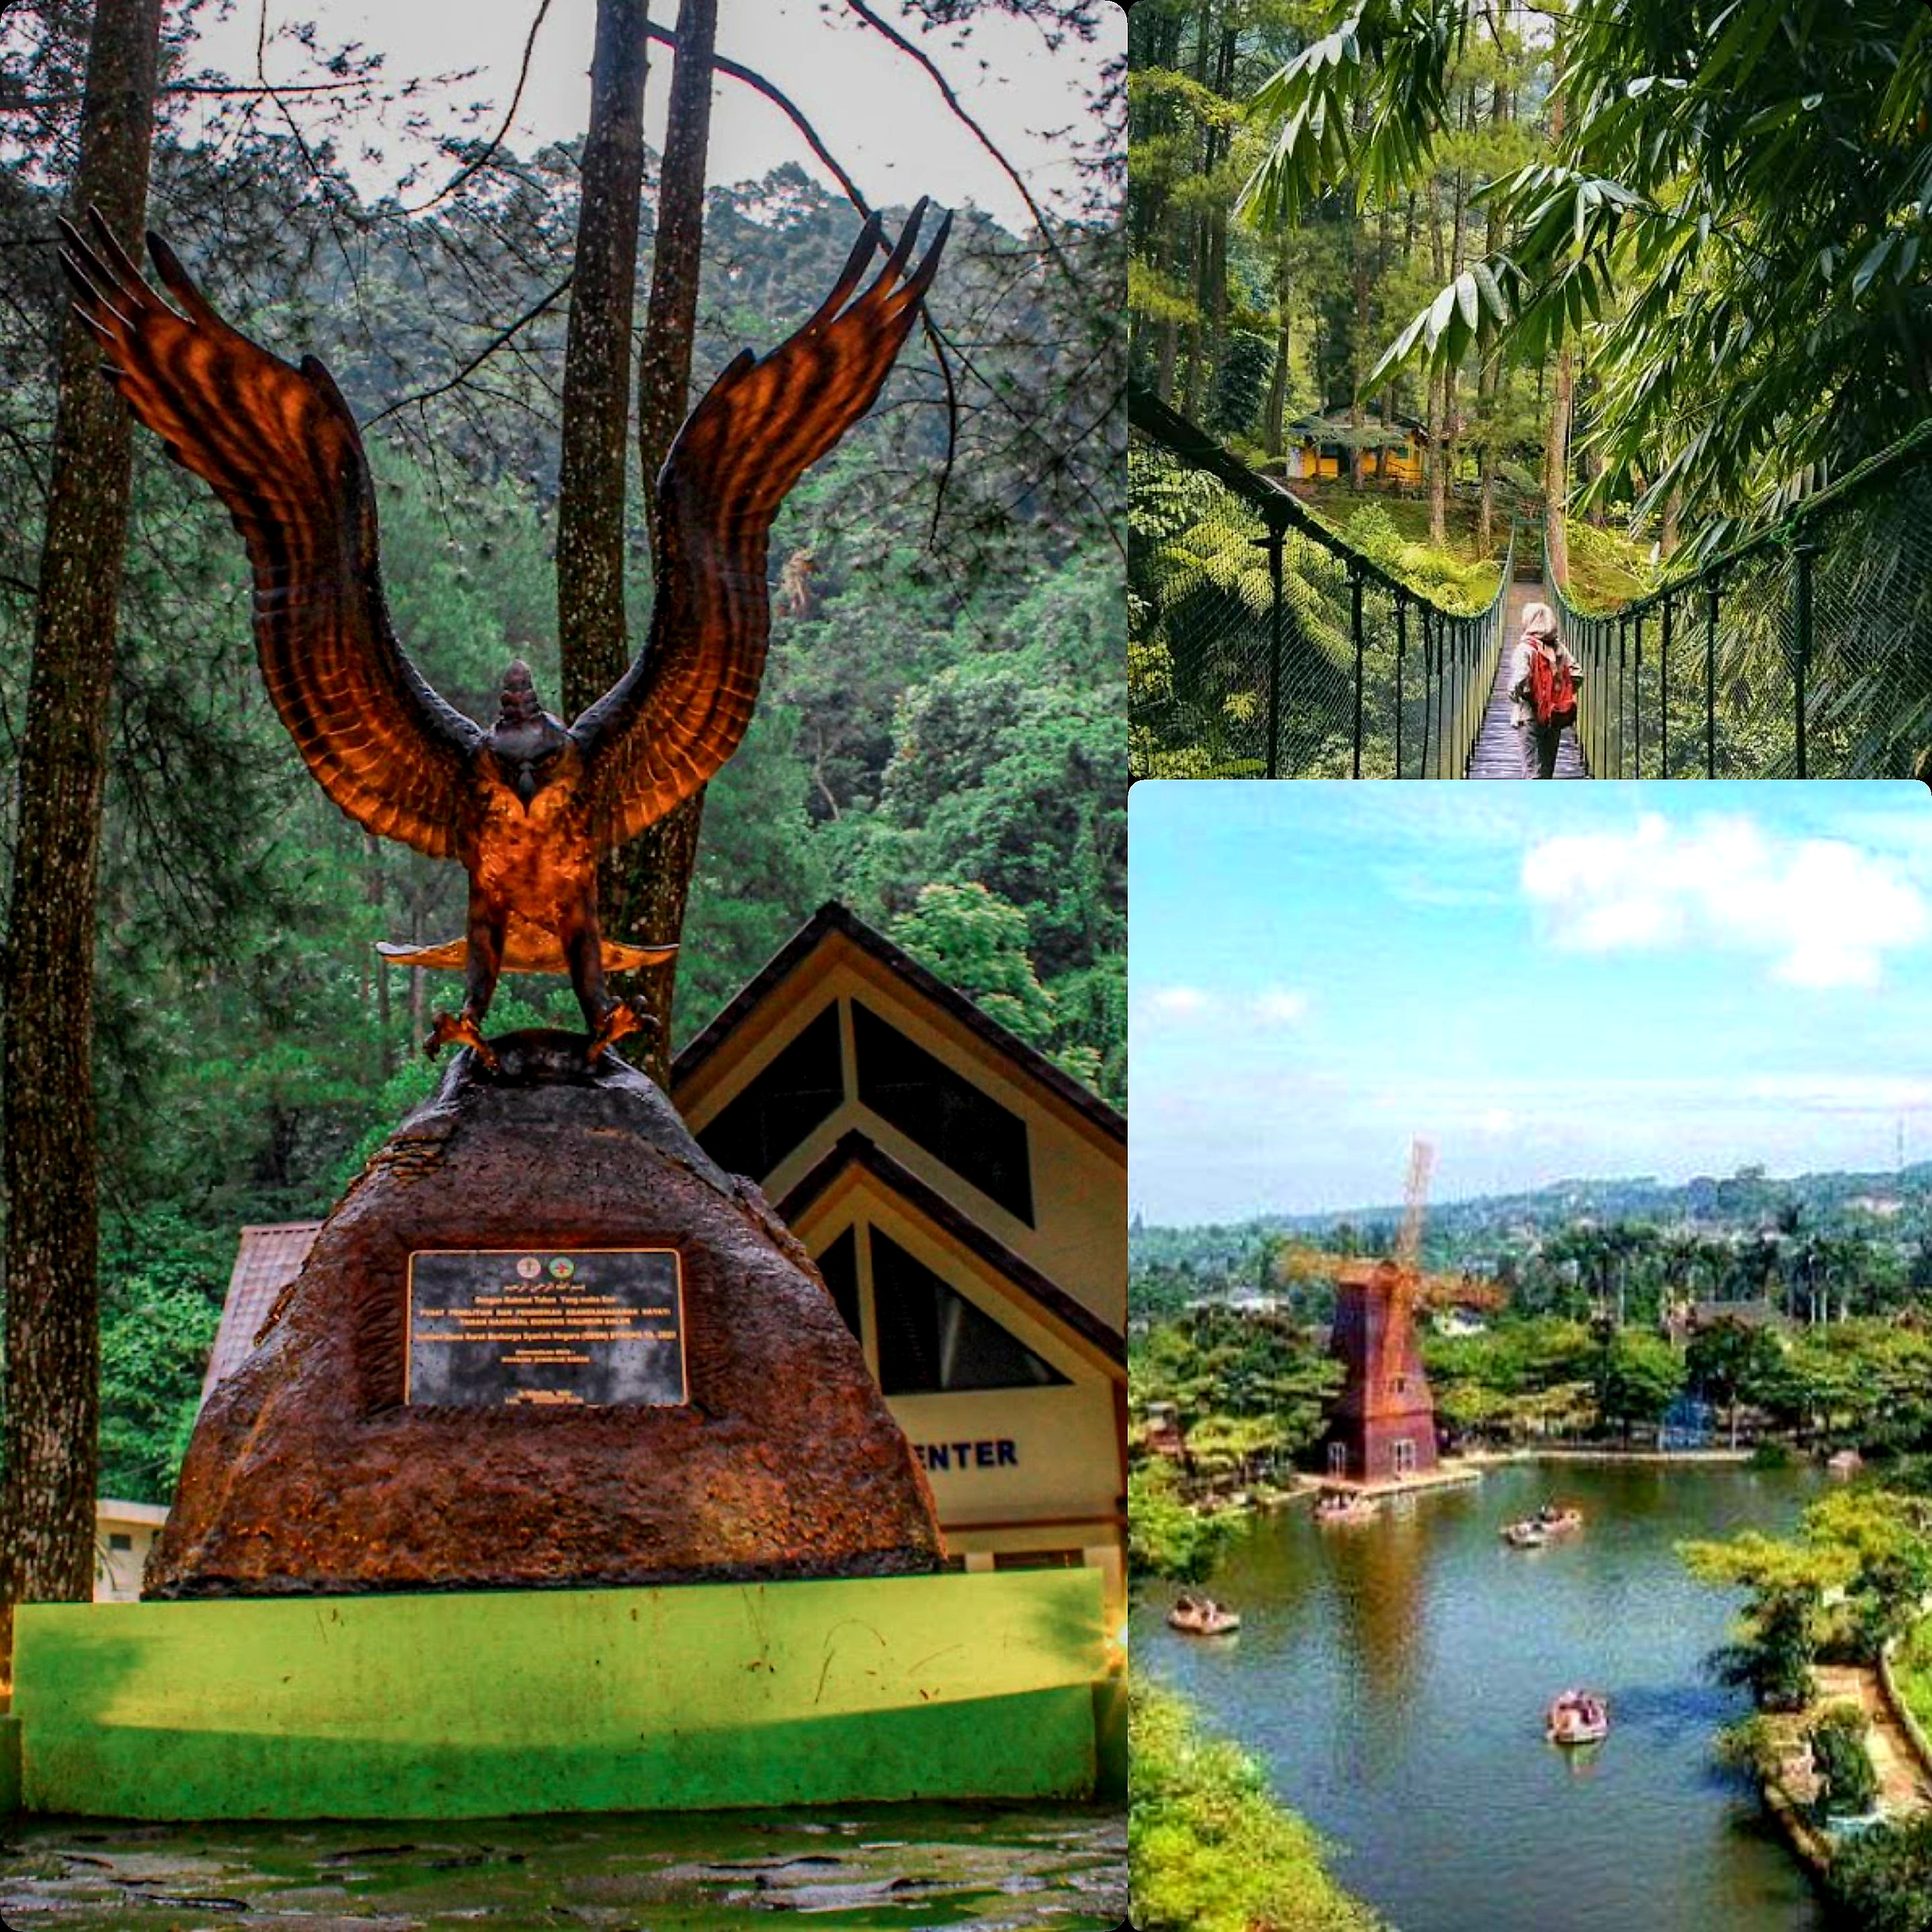 Berwisata di Camp Hulu Cai, Simak Begitu Indahnya Tempat ini!